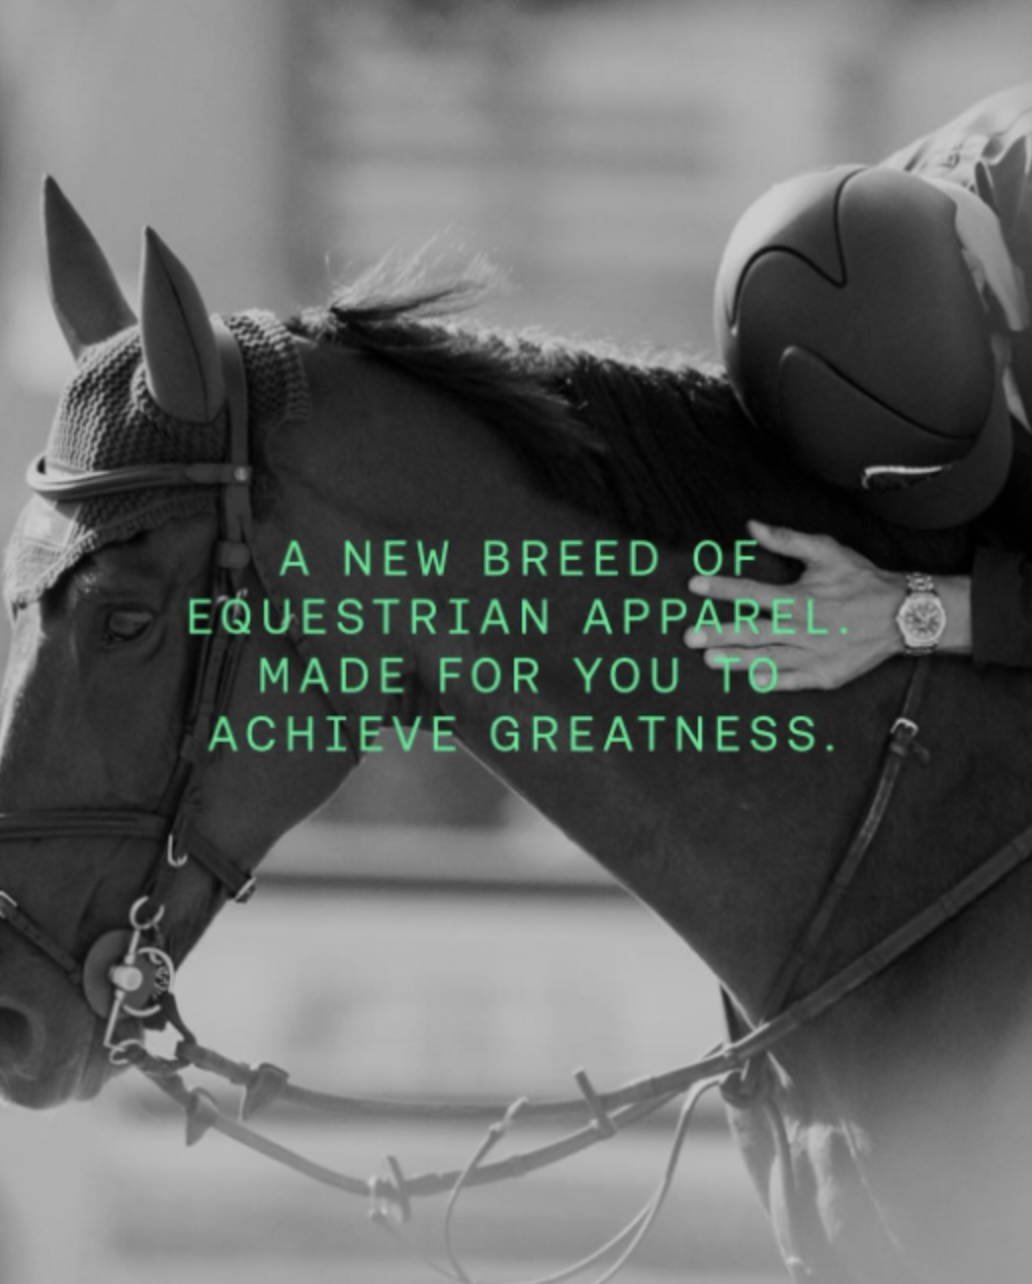 H&M запустил бренд одежды для конного спорта (фото 1)